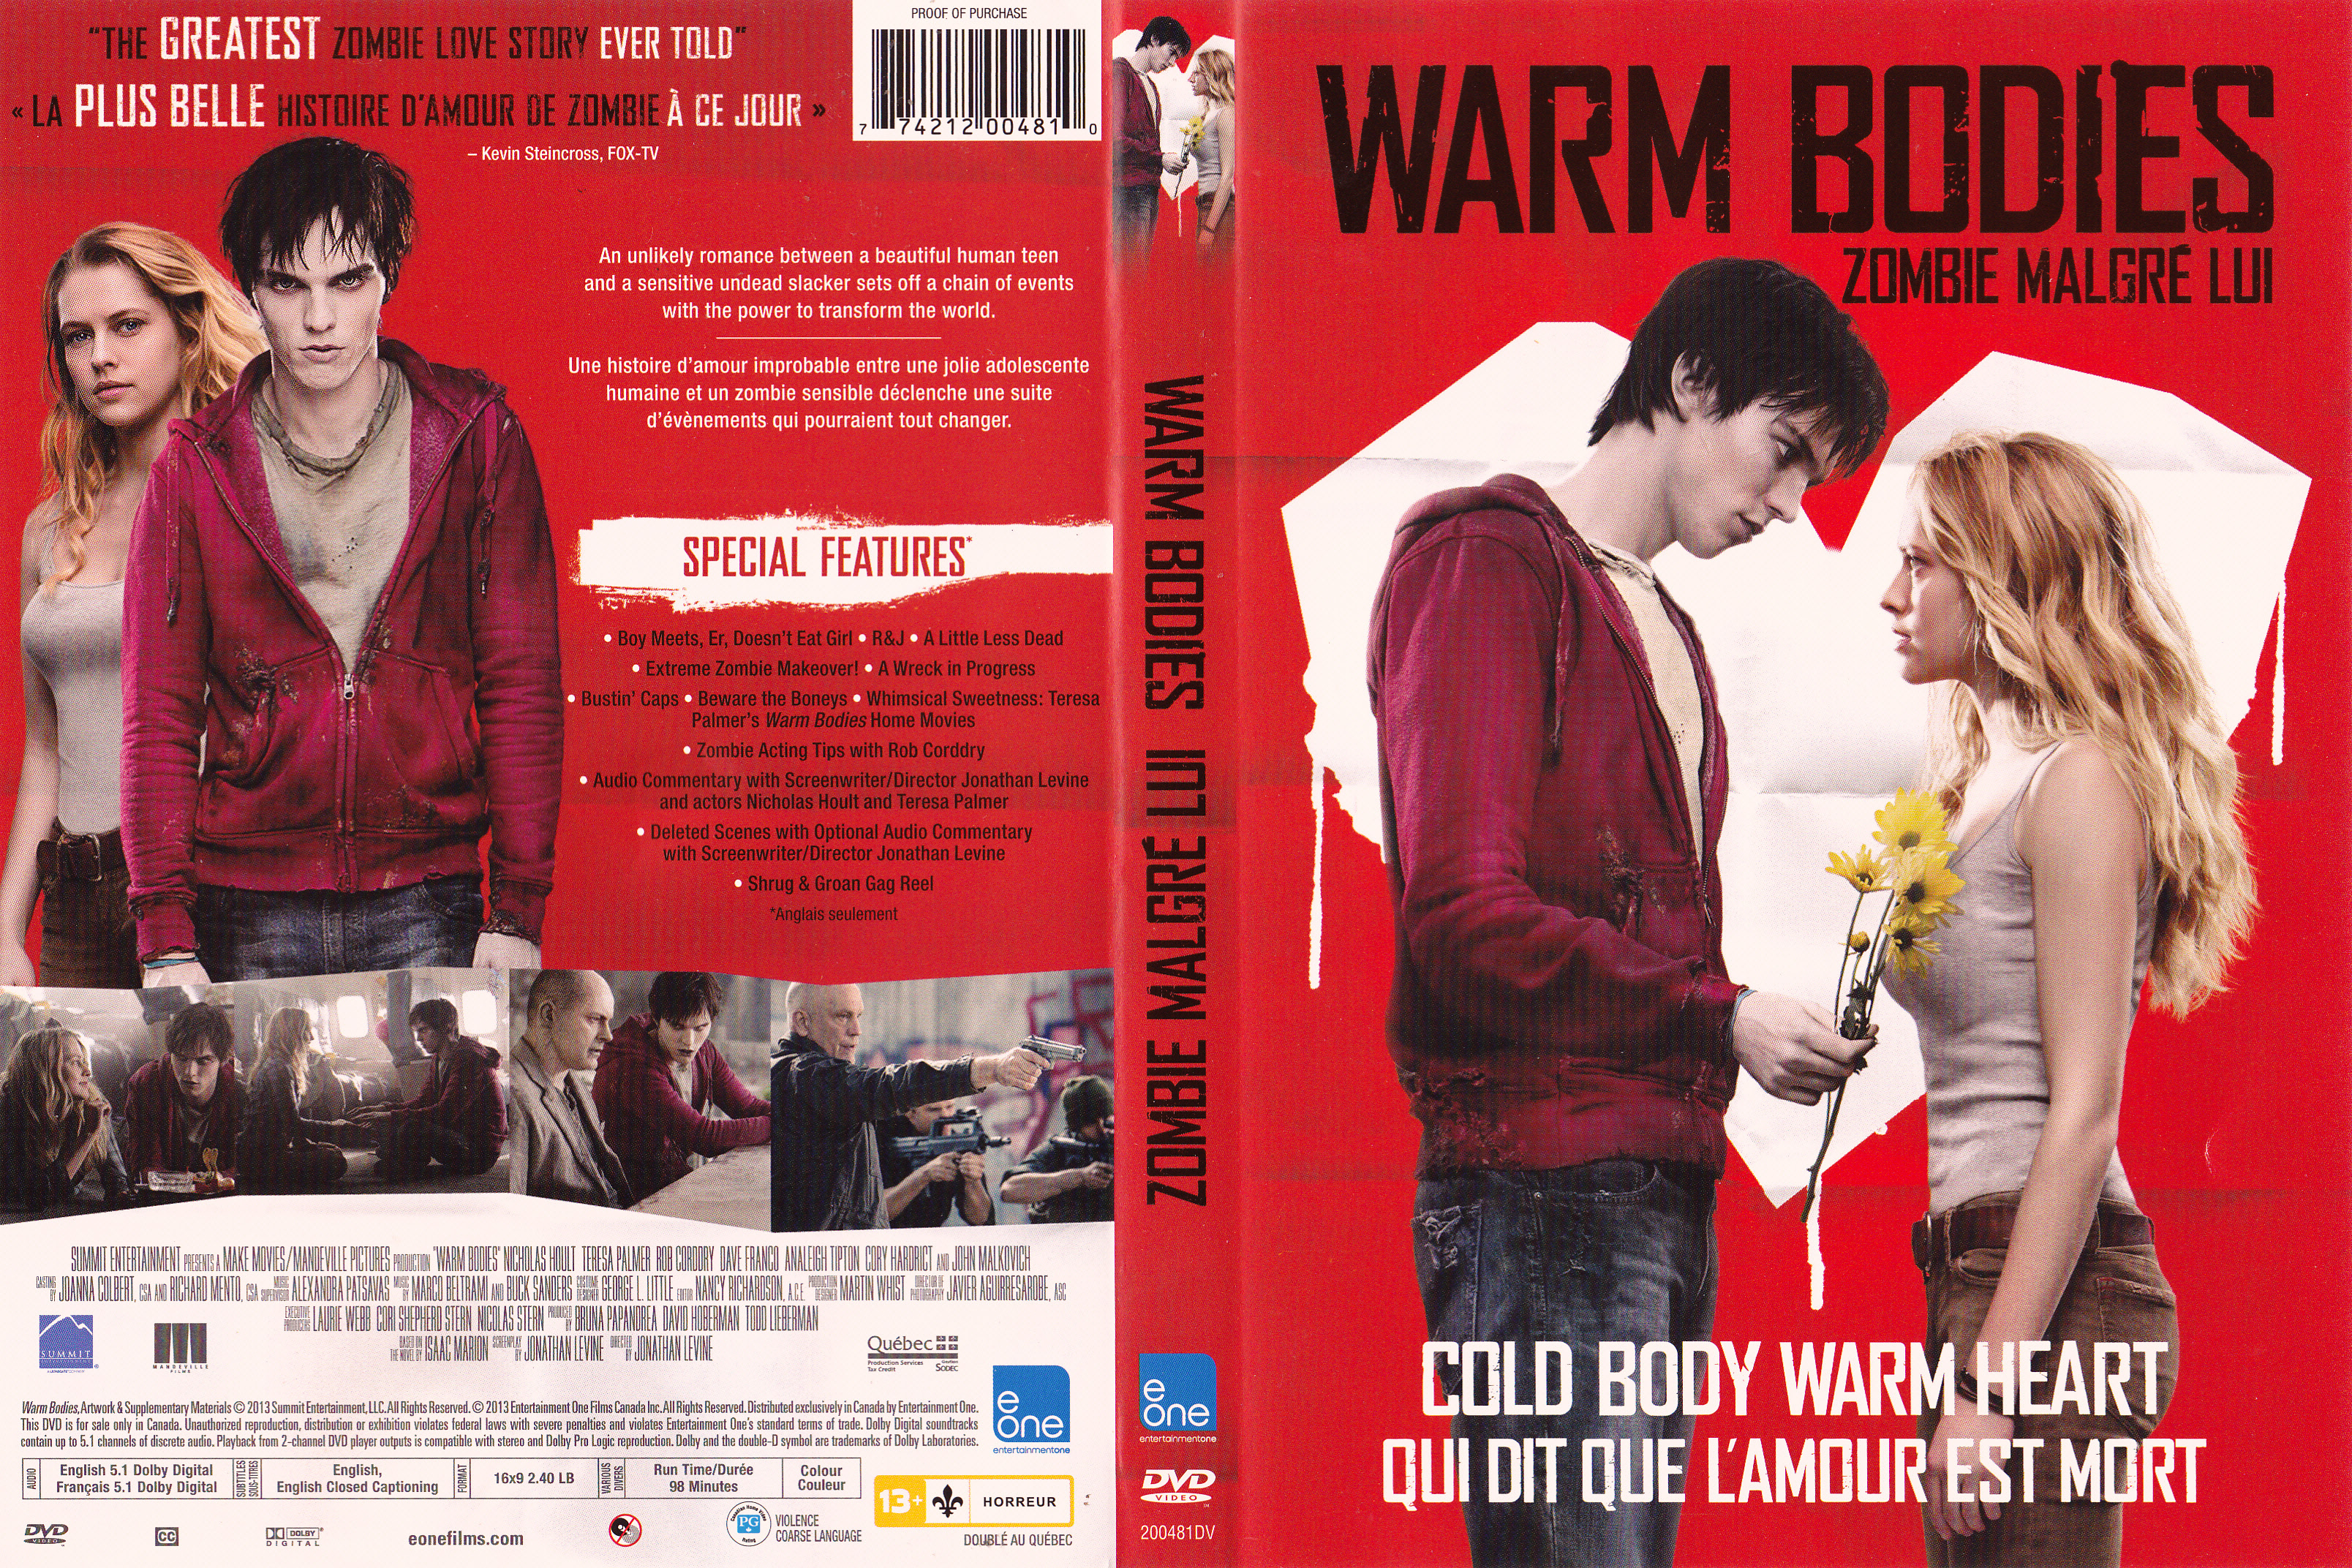 Jaquette DVD Warm bodies - Zombie malgr lui (Canadienne)